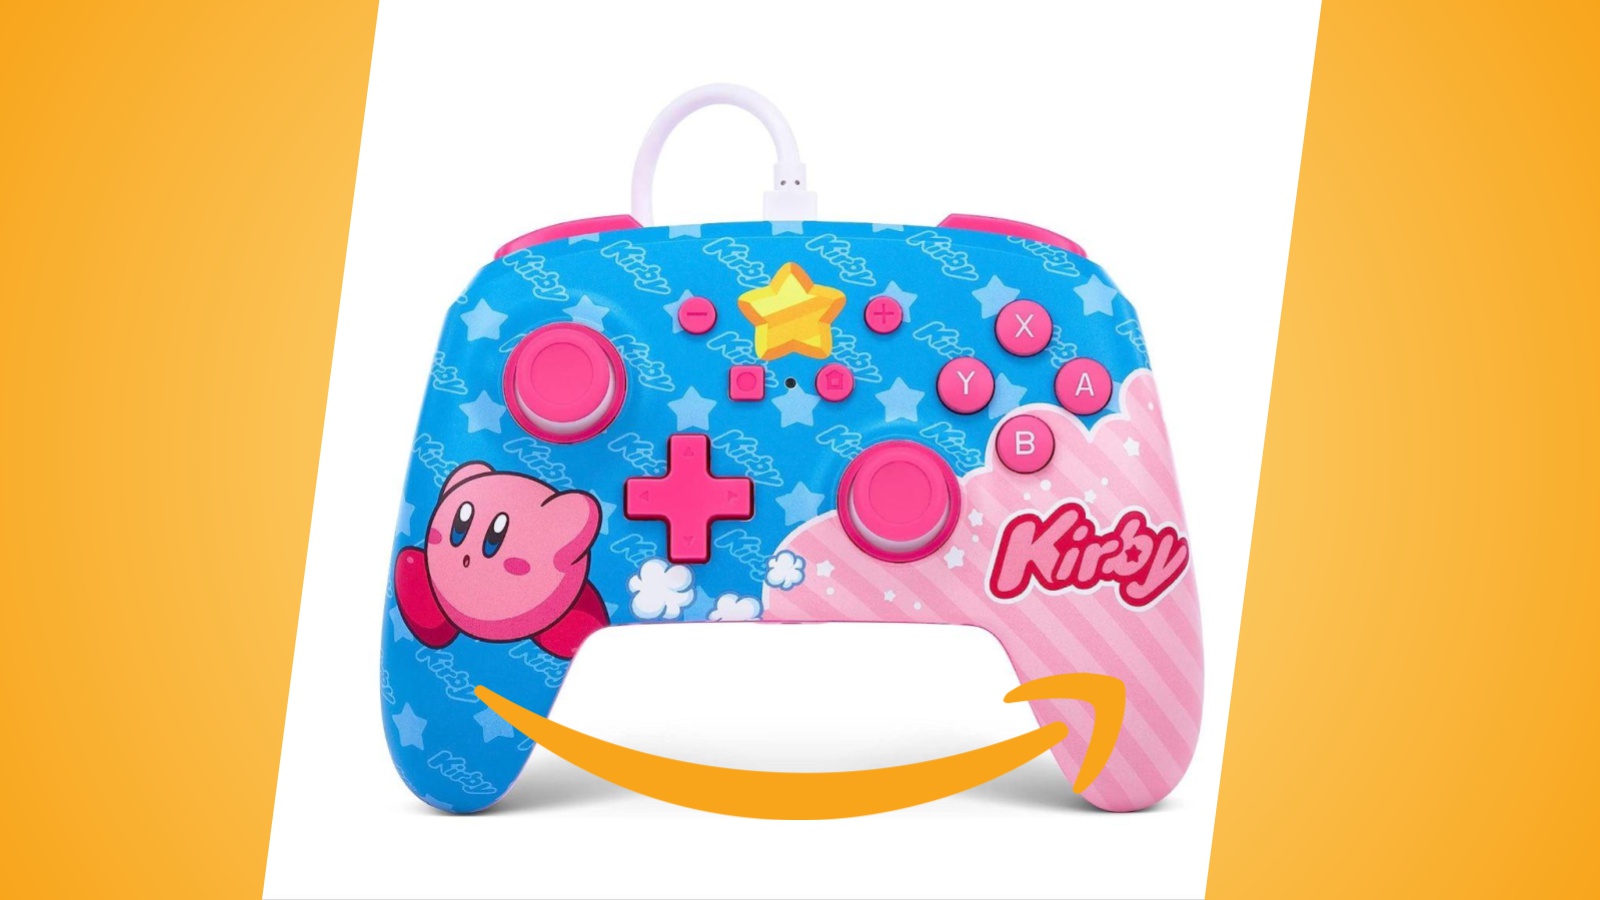 Offerte Amazon: controller cablato PowerA per Nintendo Switch a tema Kirby al prezzo minimo storico